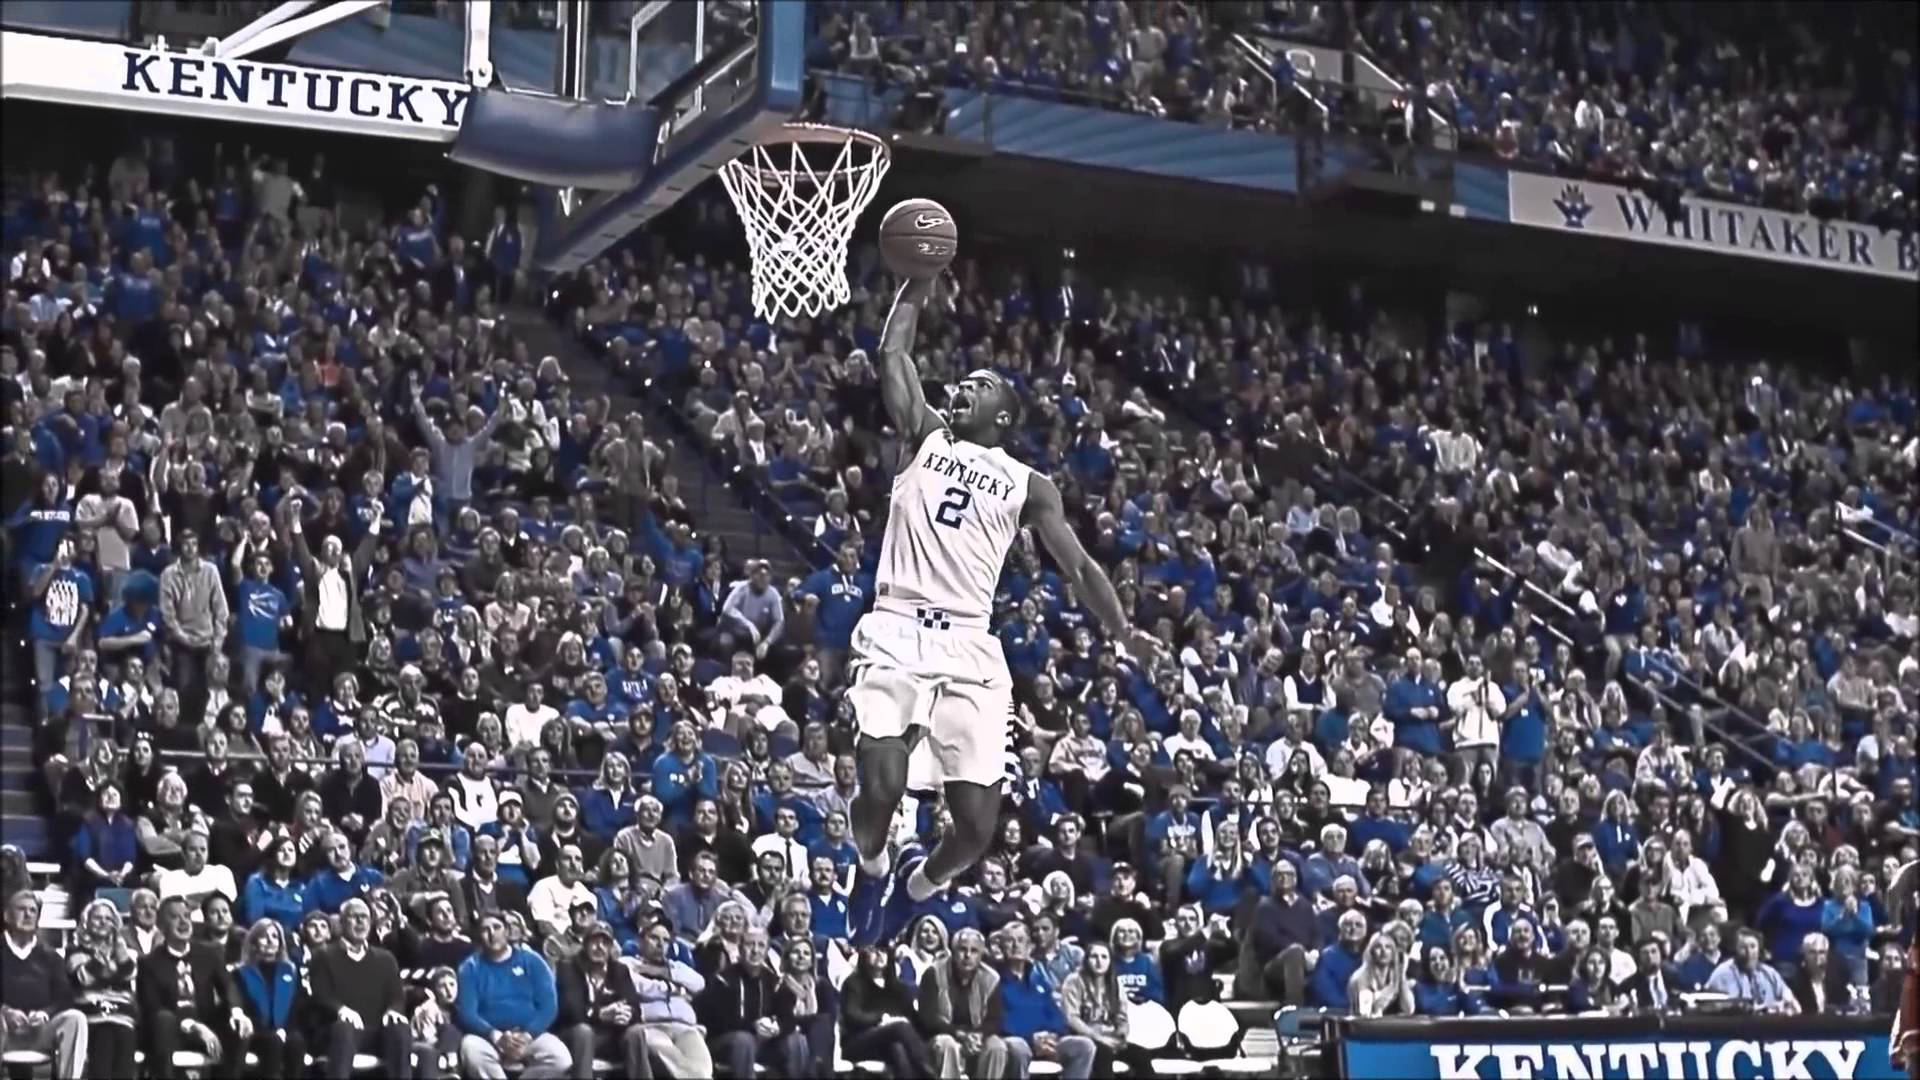 Kentucky Basketball Player Dunk Background